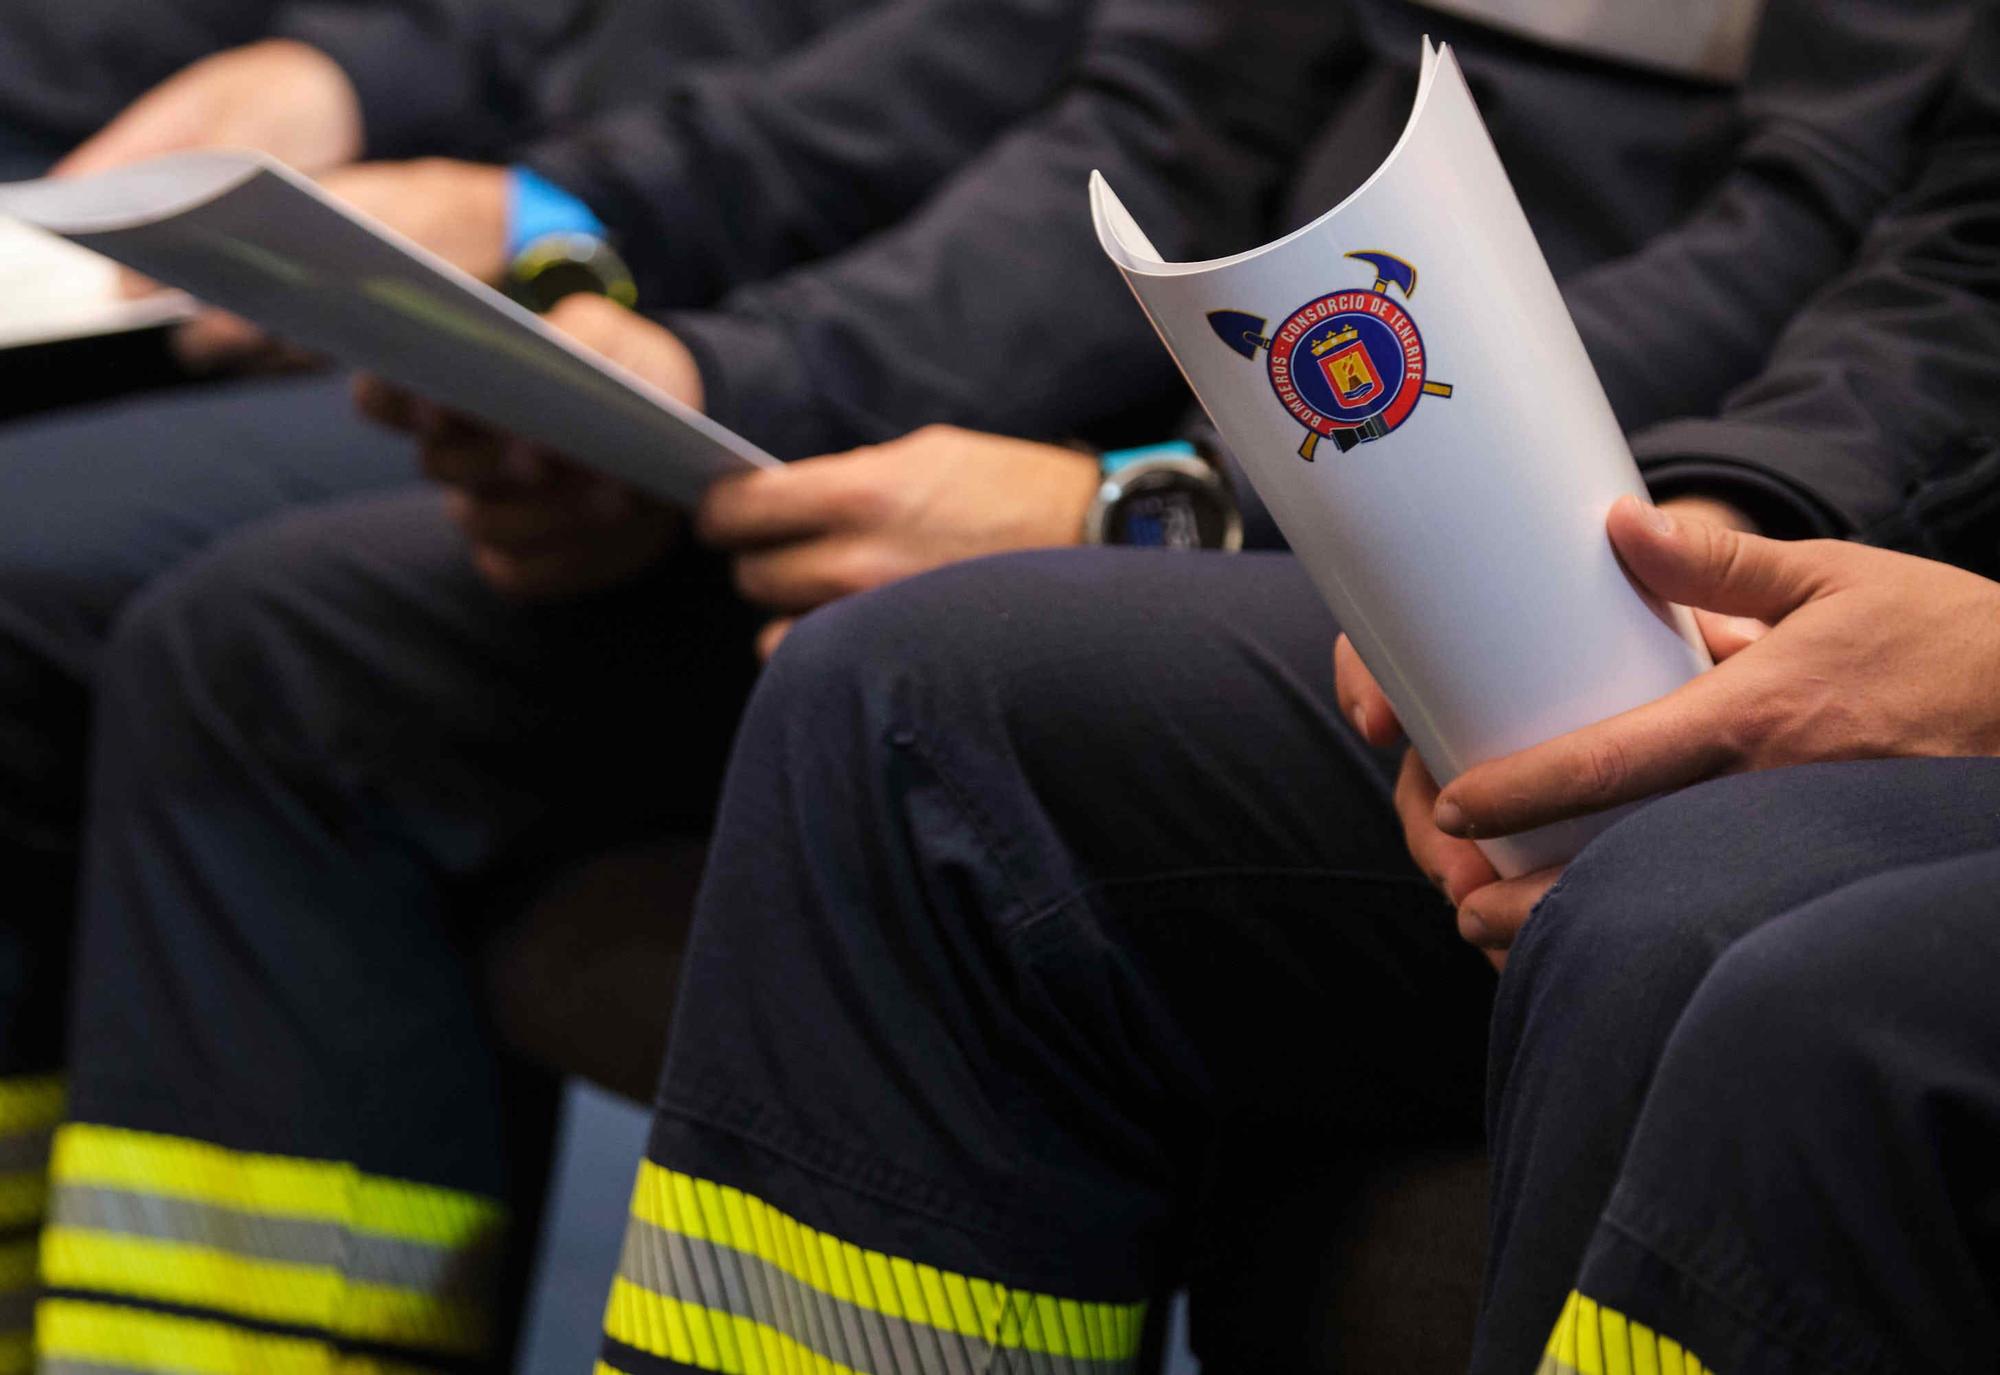 Incorporación de 10 nuevos bomberos y jefes de zona del Consorcio de Bomberos de Tenerife